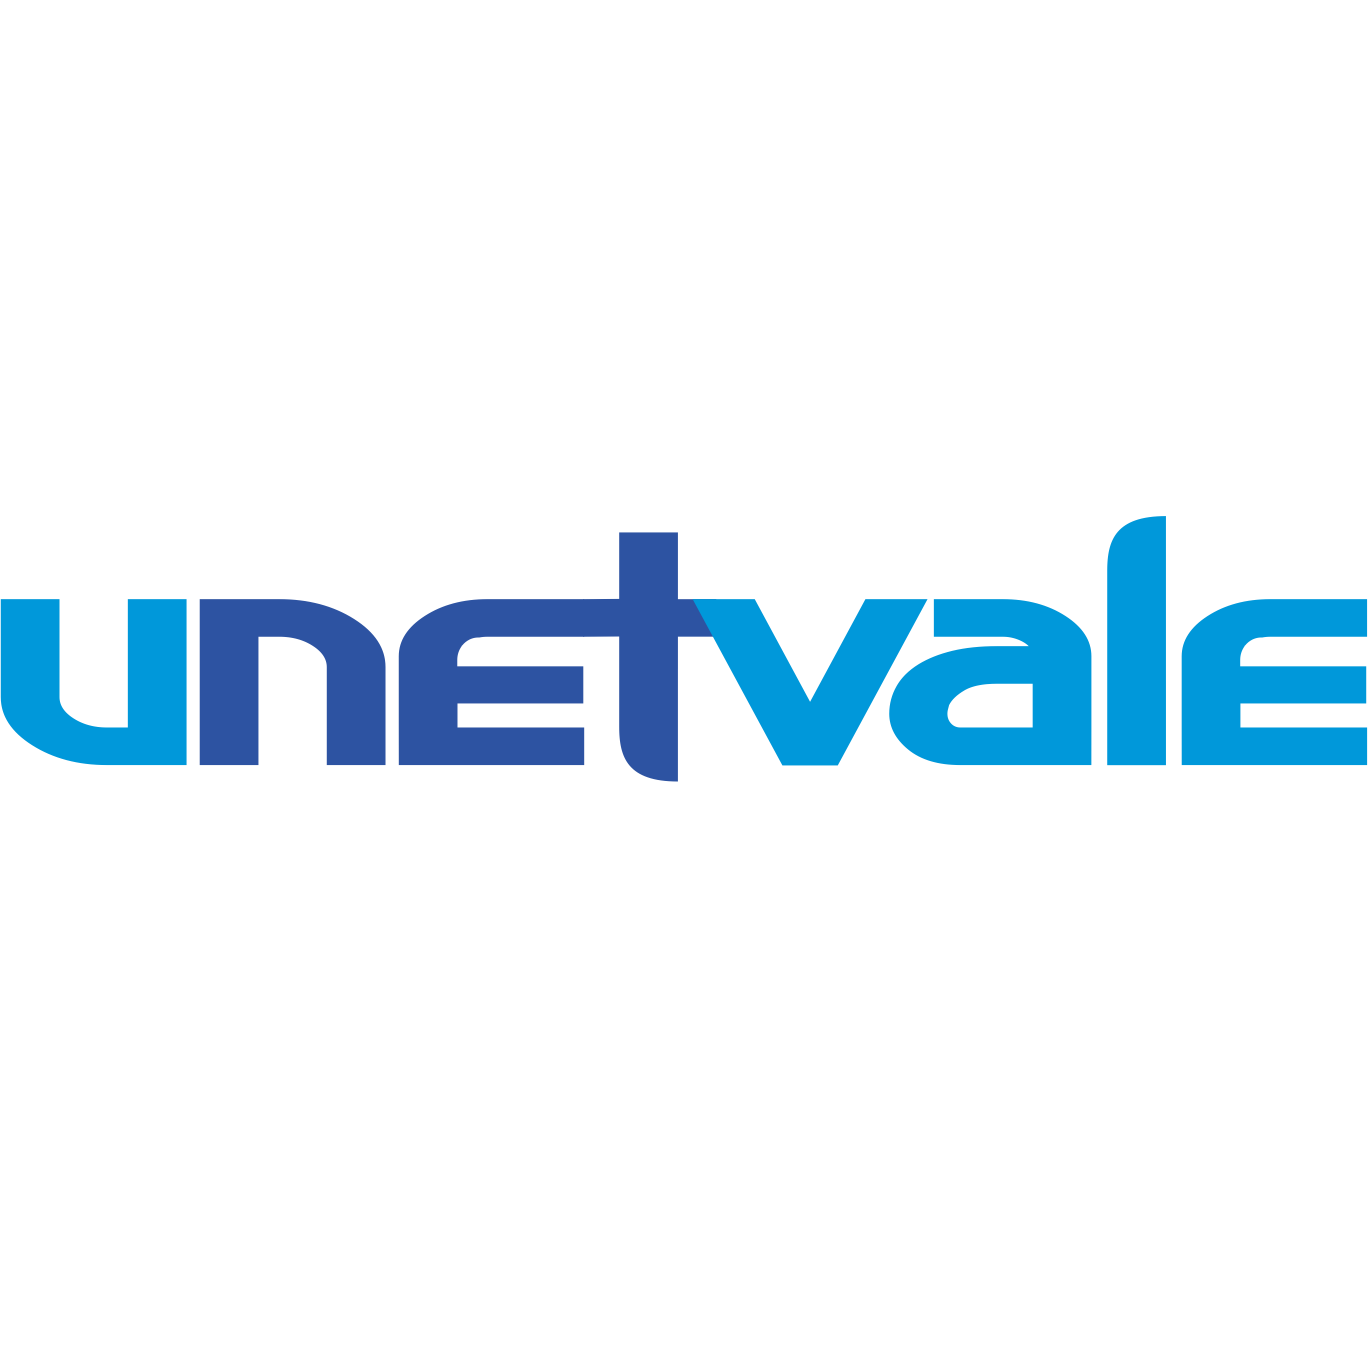 (c) Unetvale.com.br